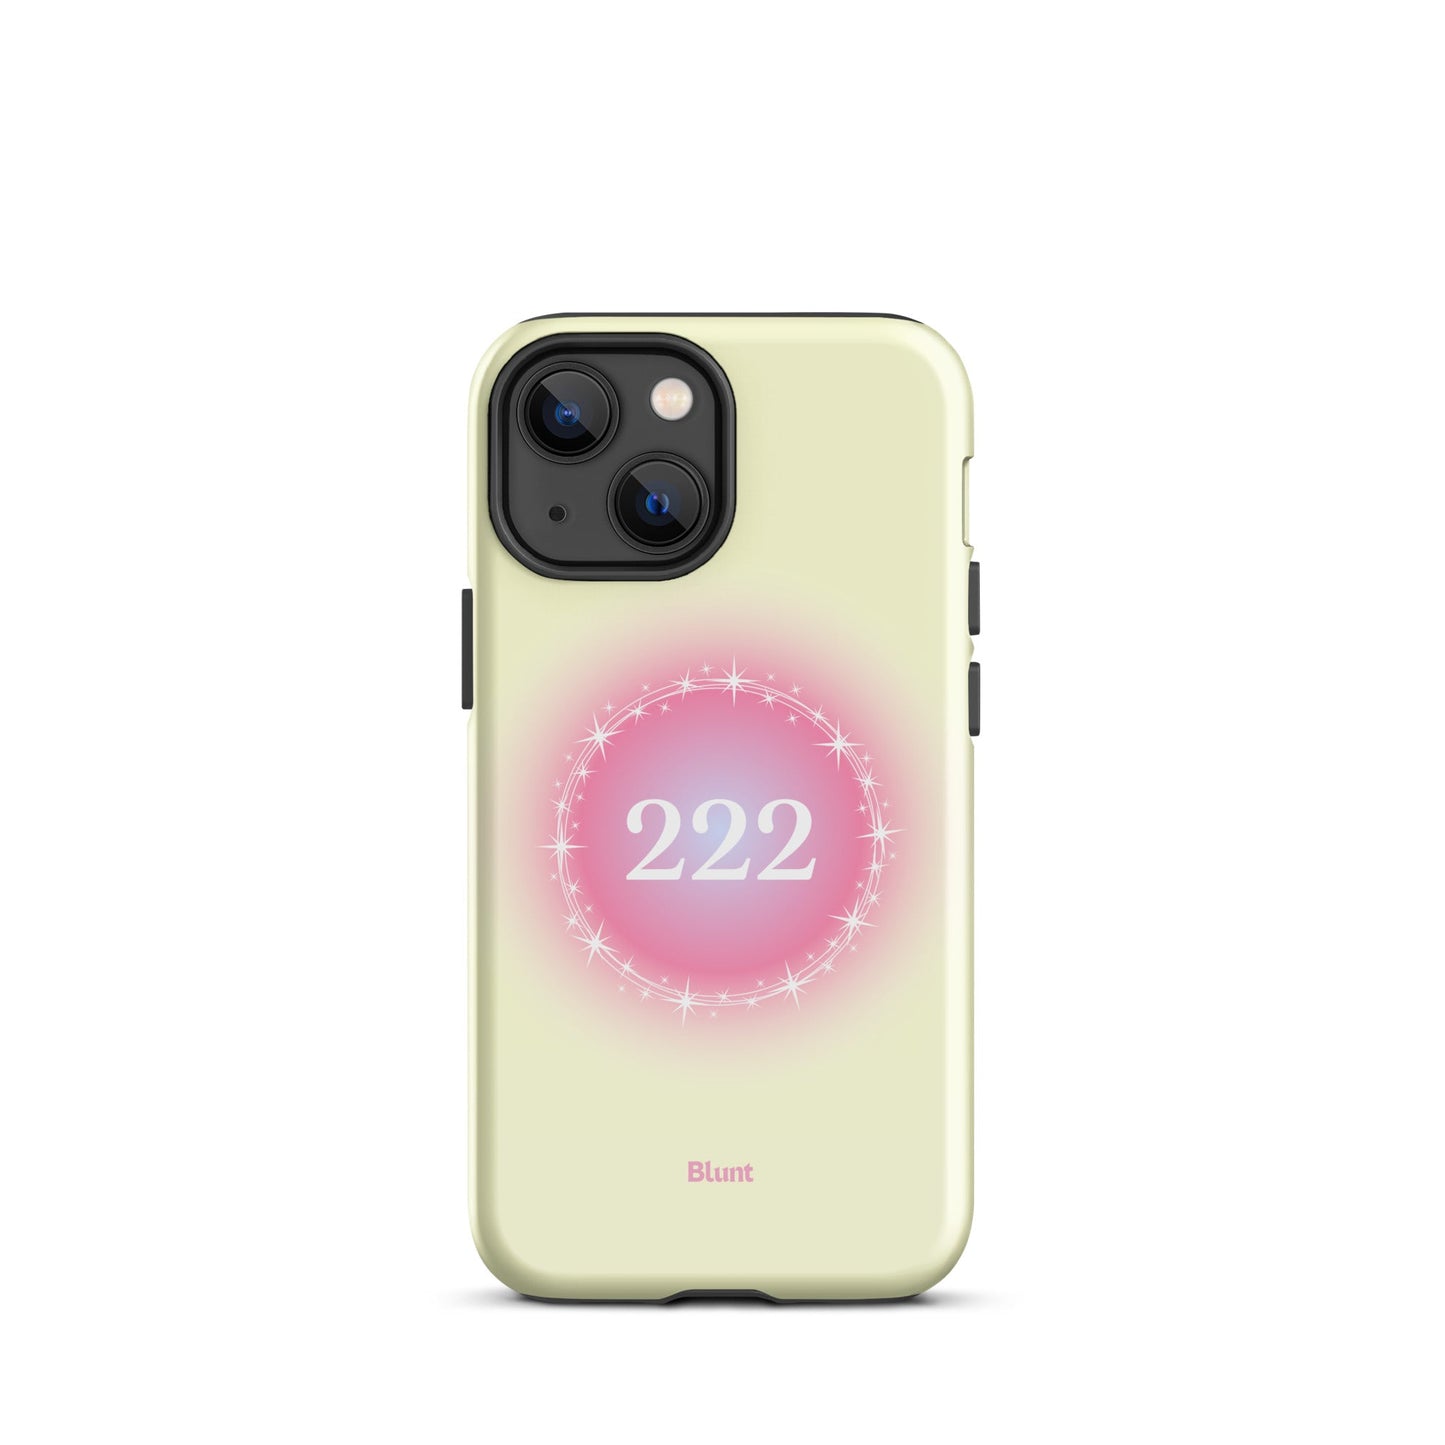 222 iPhone Case - blunt cases